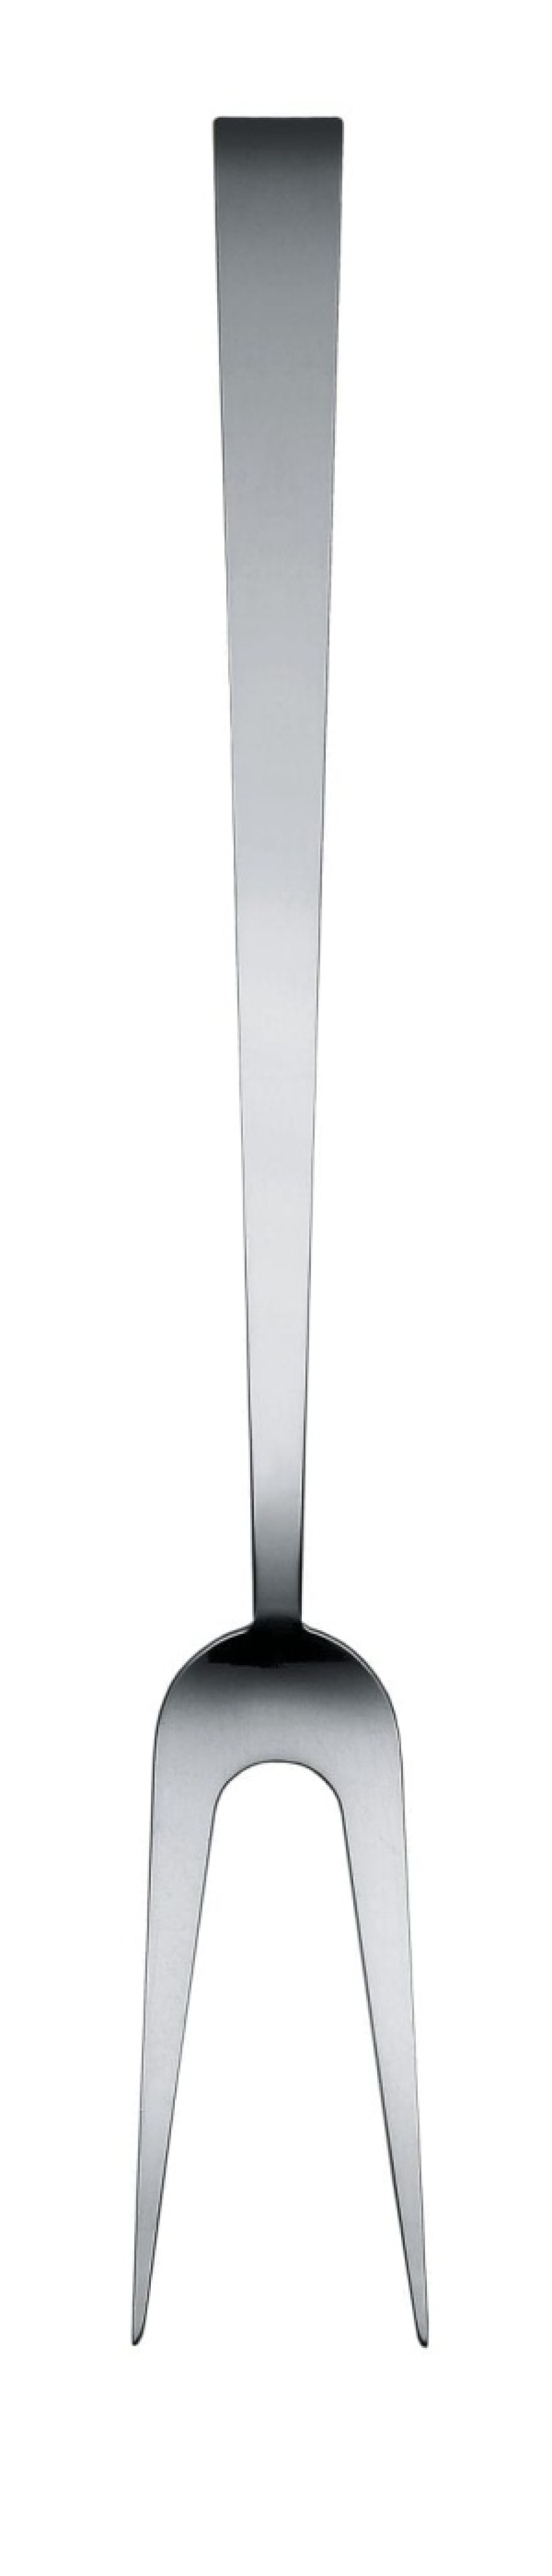 Steak fork 34 cm, Mangetootoo - Alessi in the group Cooking / Kitchen utensils / Other kitchen utensils at KitchenLab (1466-16609)